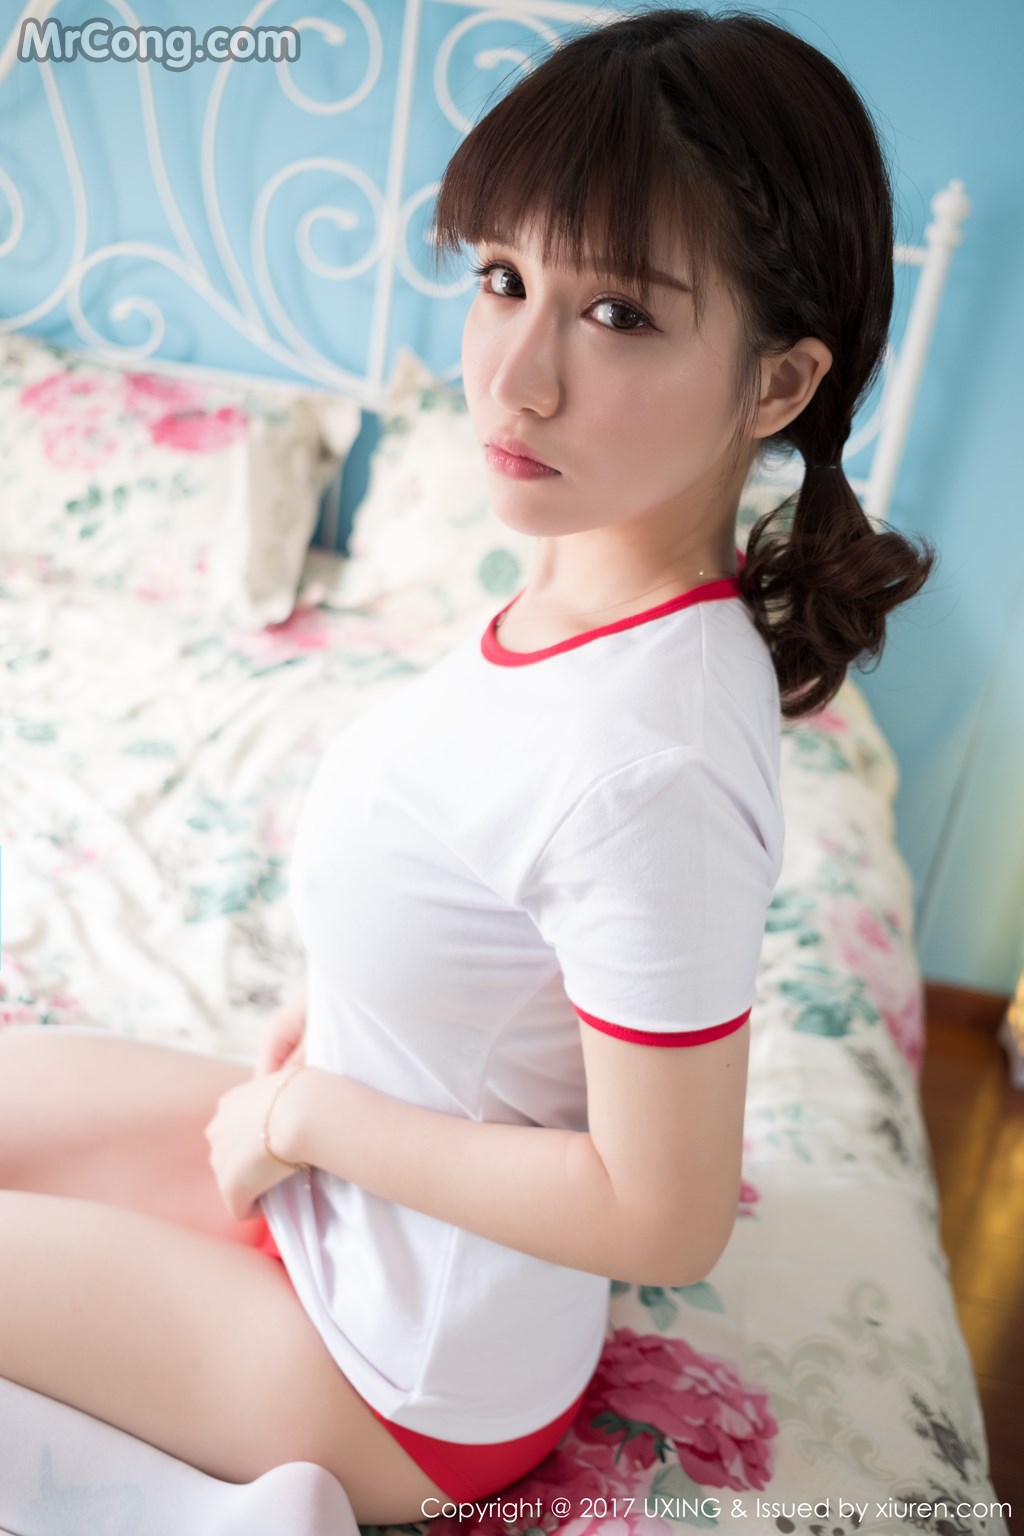 UXING Vol.040: Model Aojiao Meng Meng (K8 傲 娇 萌萌 Vivian) (61 photos) photo 1-9